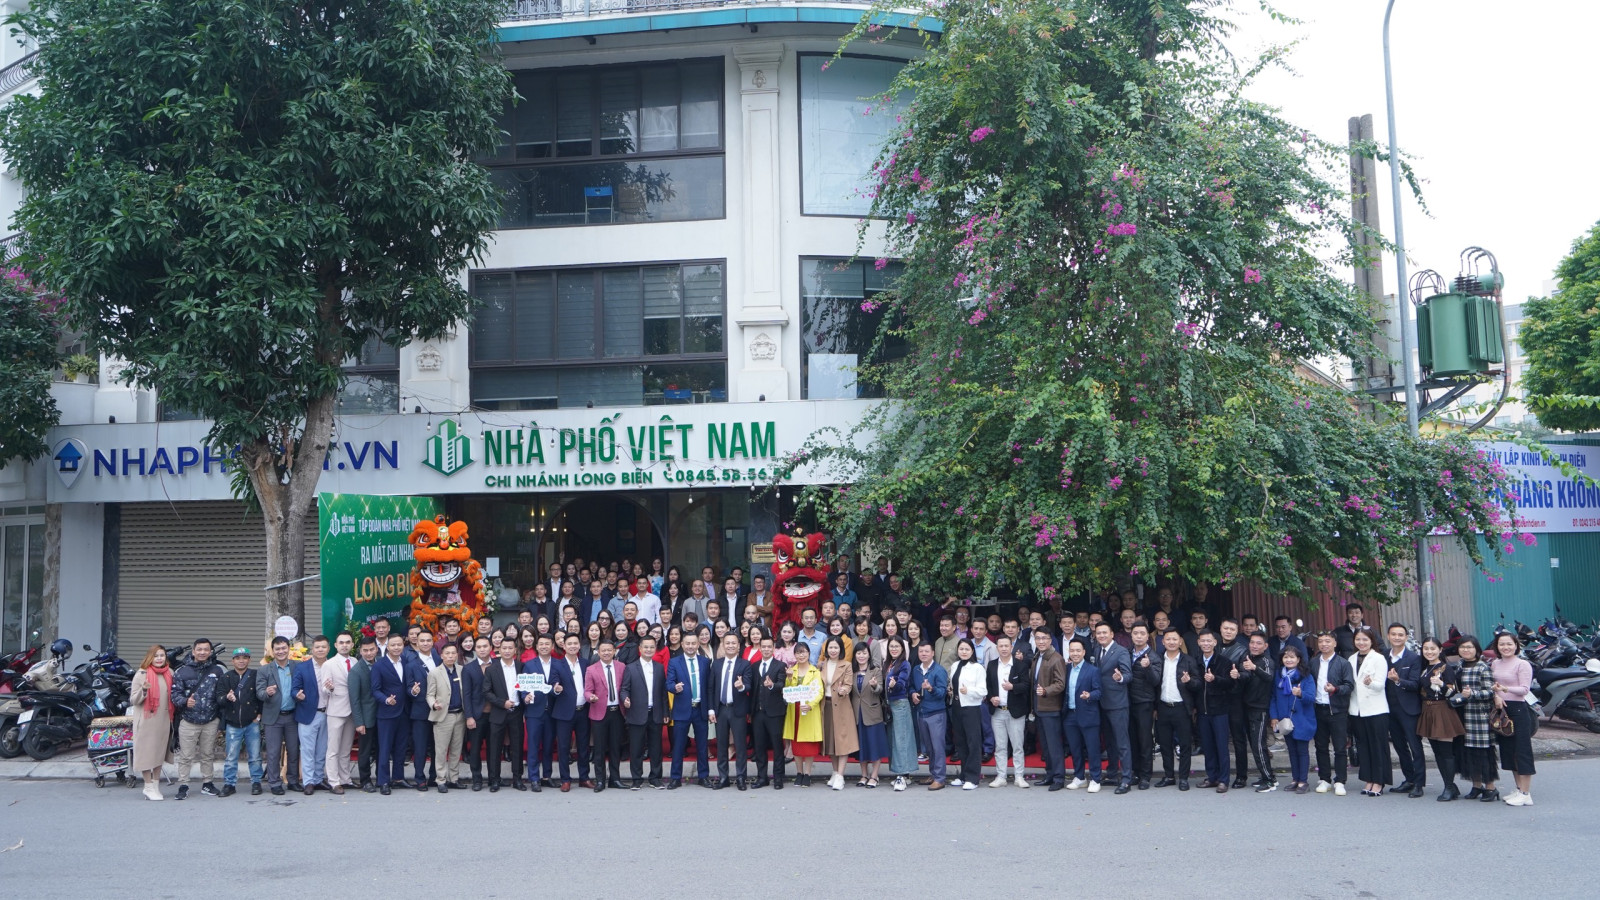 Nhà Phố Việt Nam khai trương chi nhánh Long Biên với mục tiêu cuối năm 2024 cán đích 1500 nhân sự